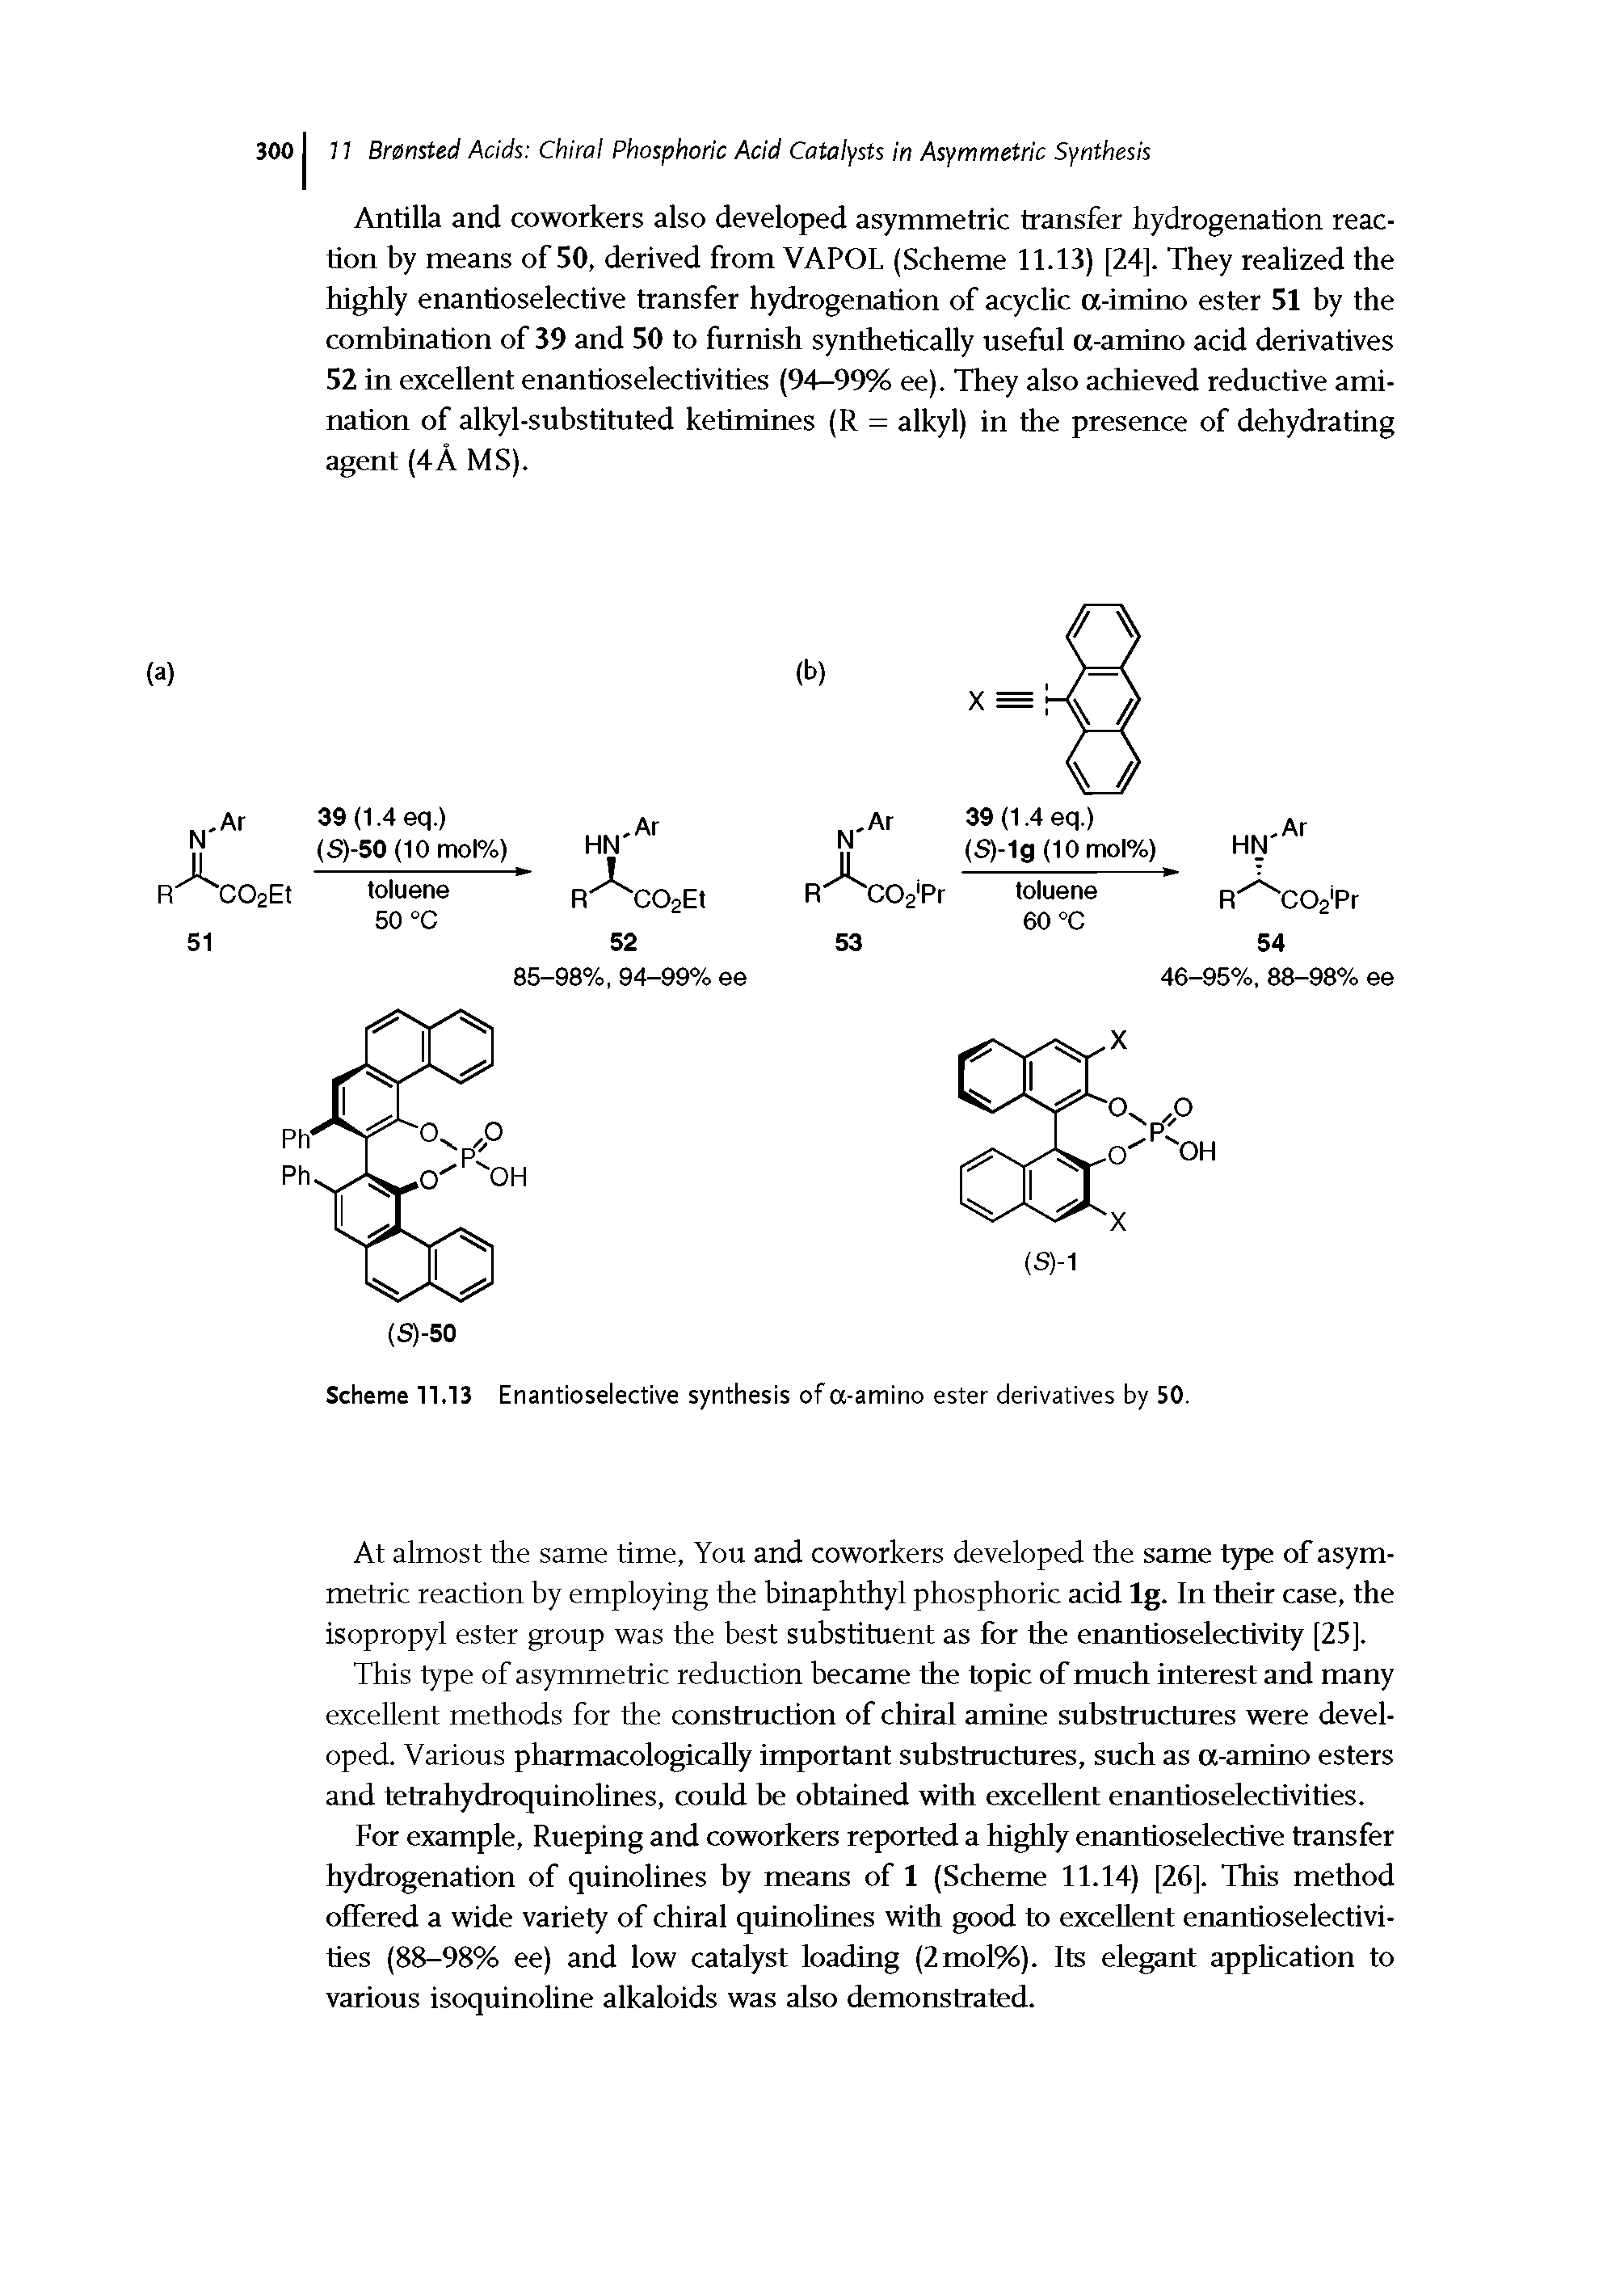 Scheme 11.13 Enantioselective synthesis of a-amino ester derivatives by 50.